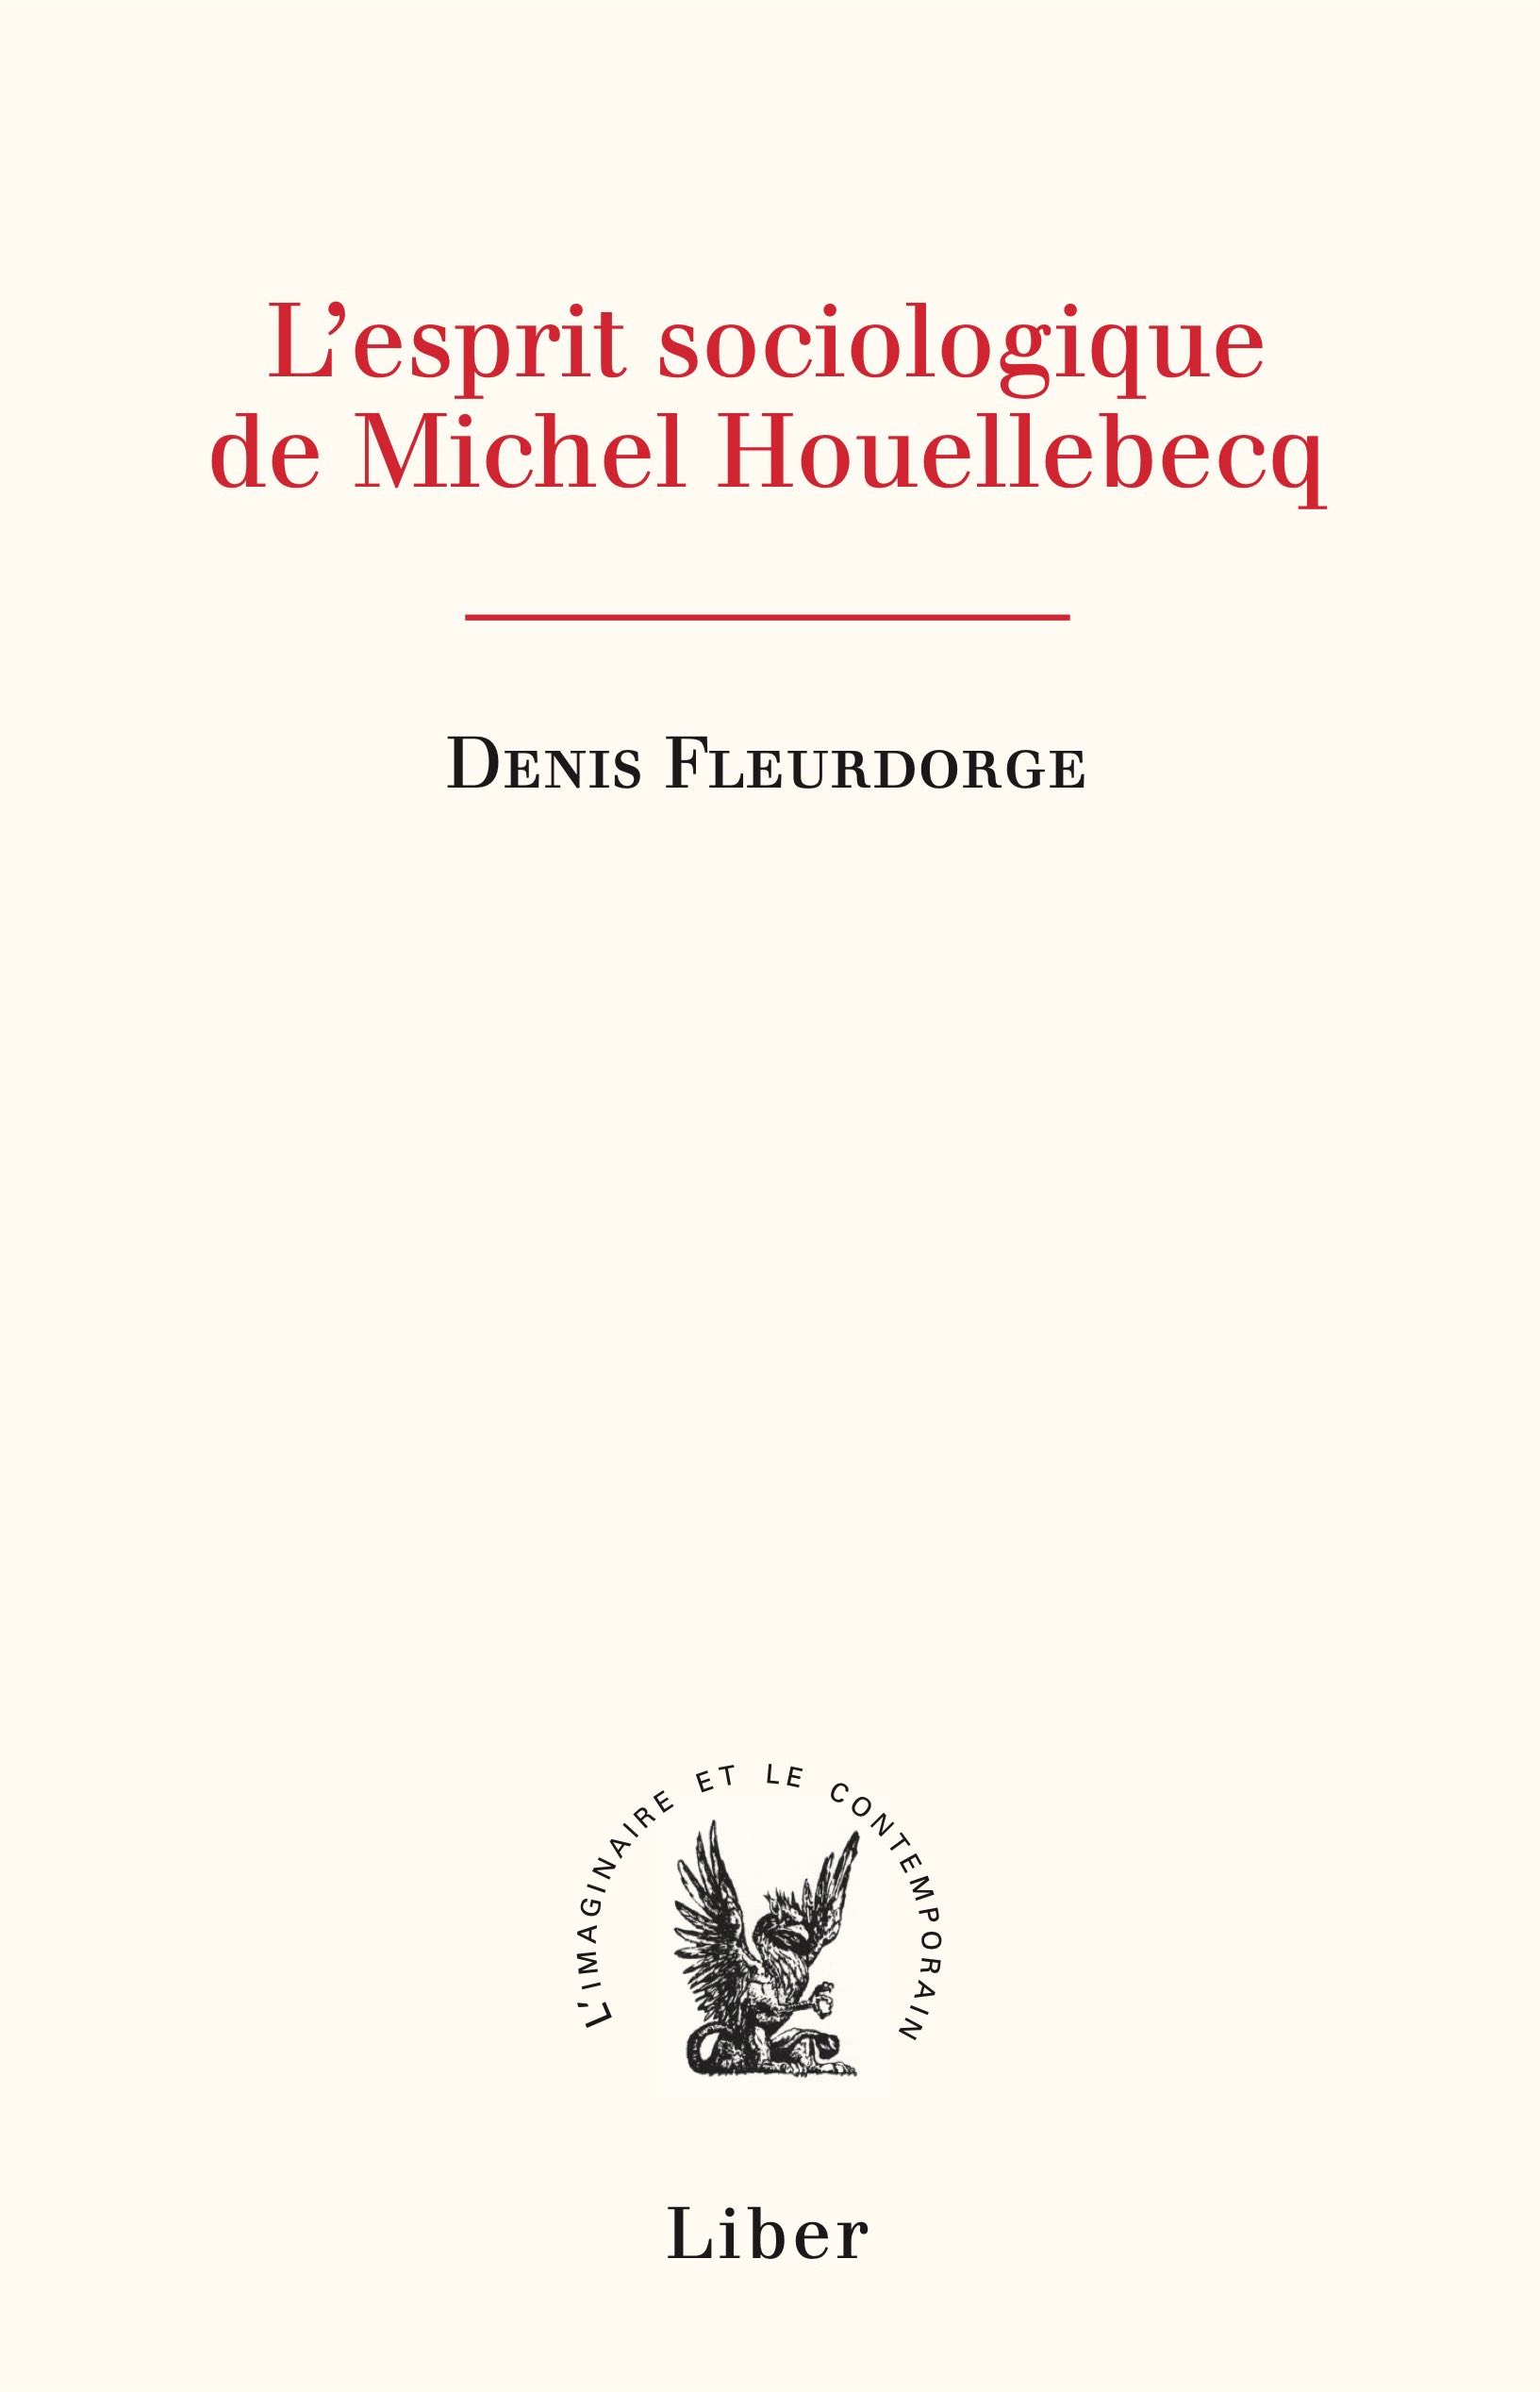 Les tiroirs sociologiques de Michel Houellebecq.